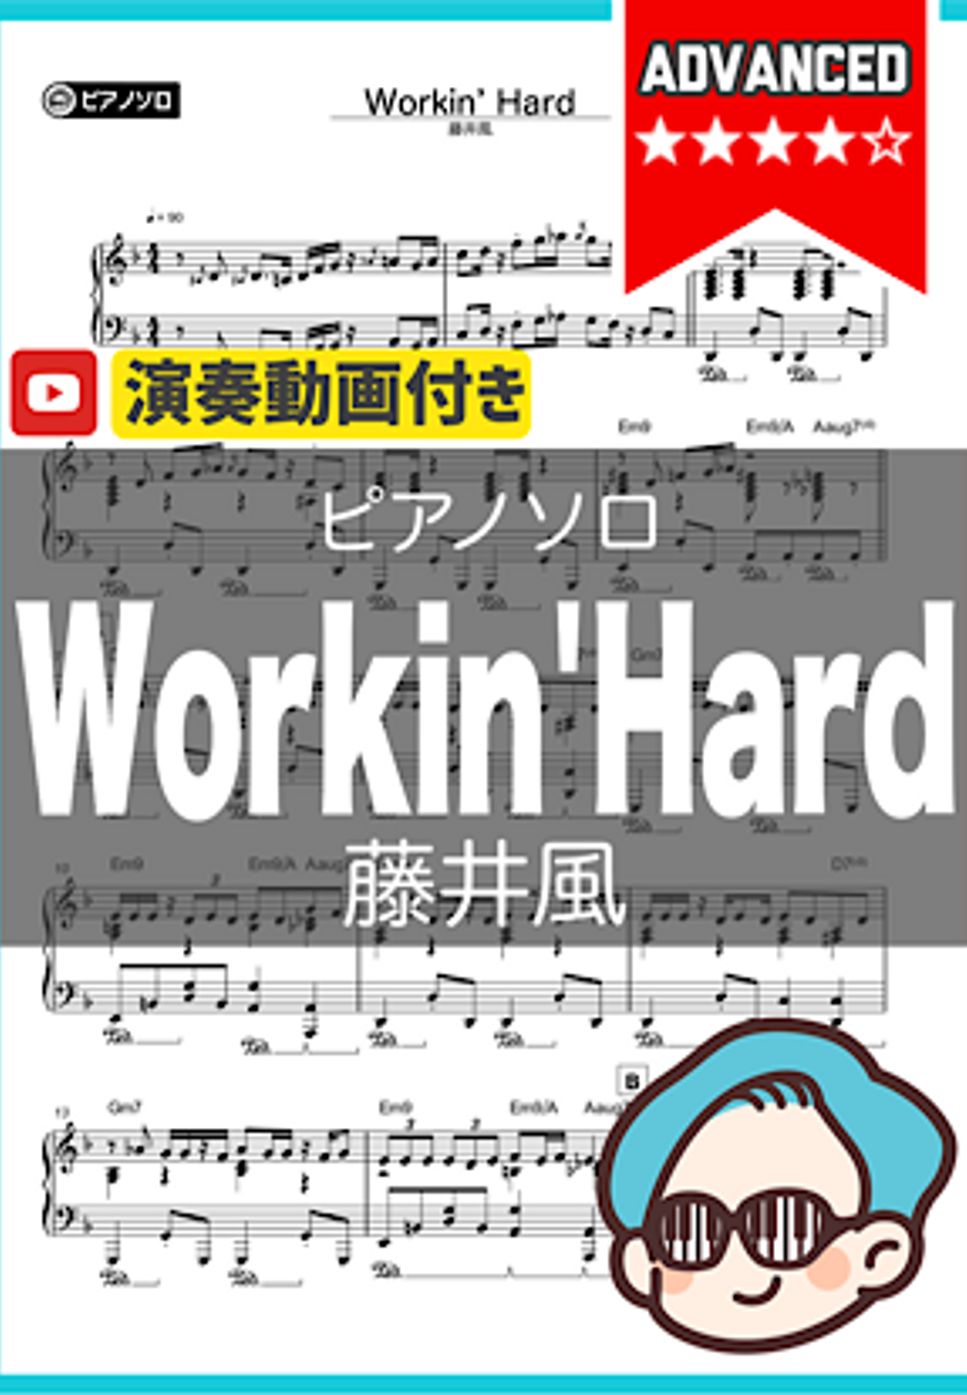 藤井風 - Workin' Hard by シータピアノ